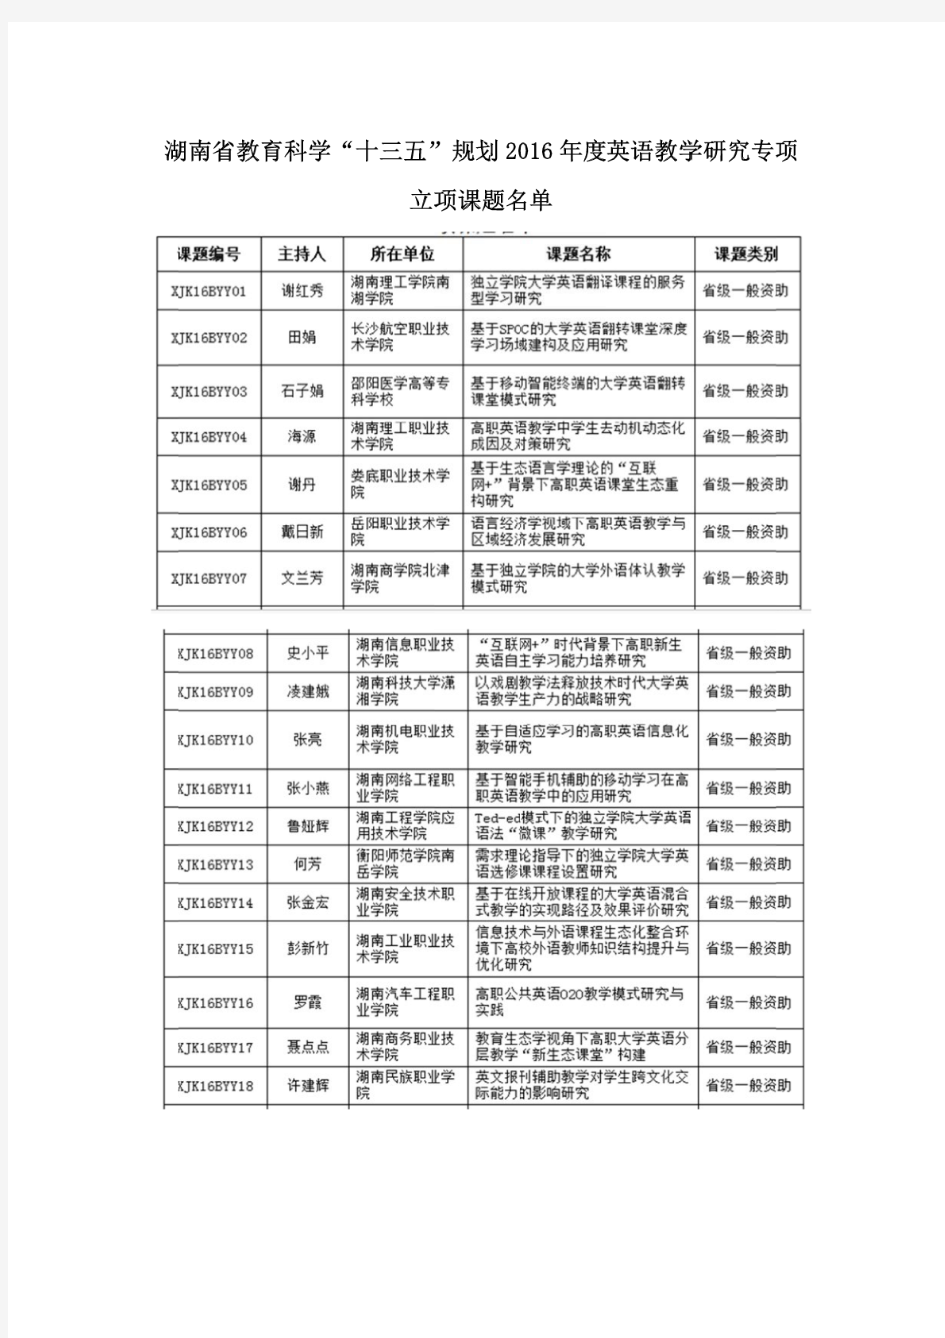 湖南省教育科学“十三五”规划2016年度英语教学研究专项立项课题名单